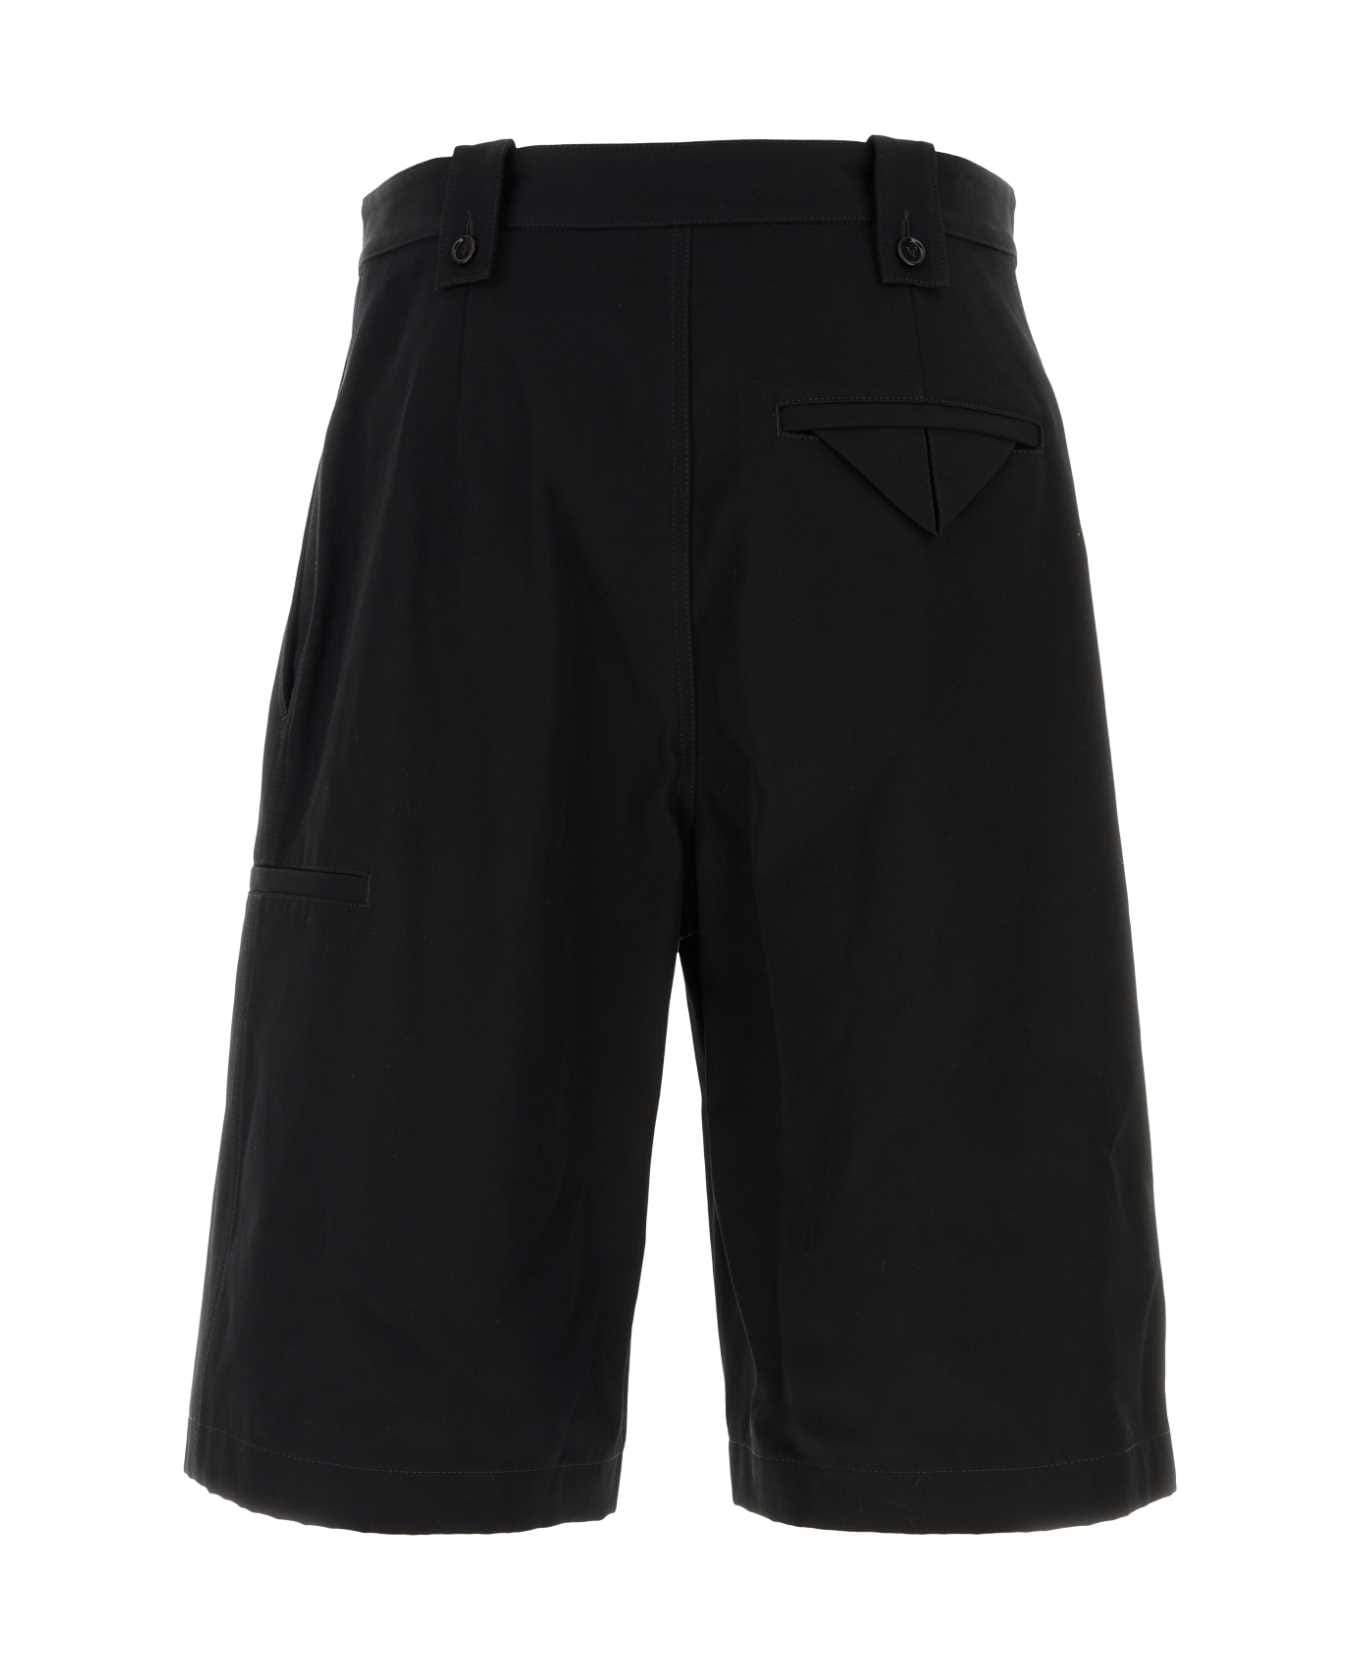 Bottega Veneta Black Twill Bermuda Shorts - Black